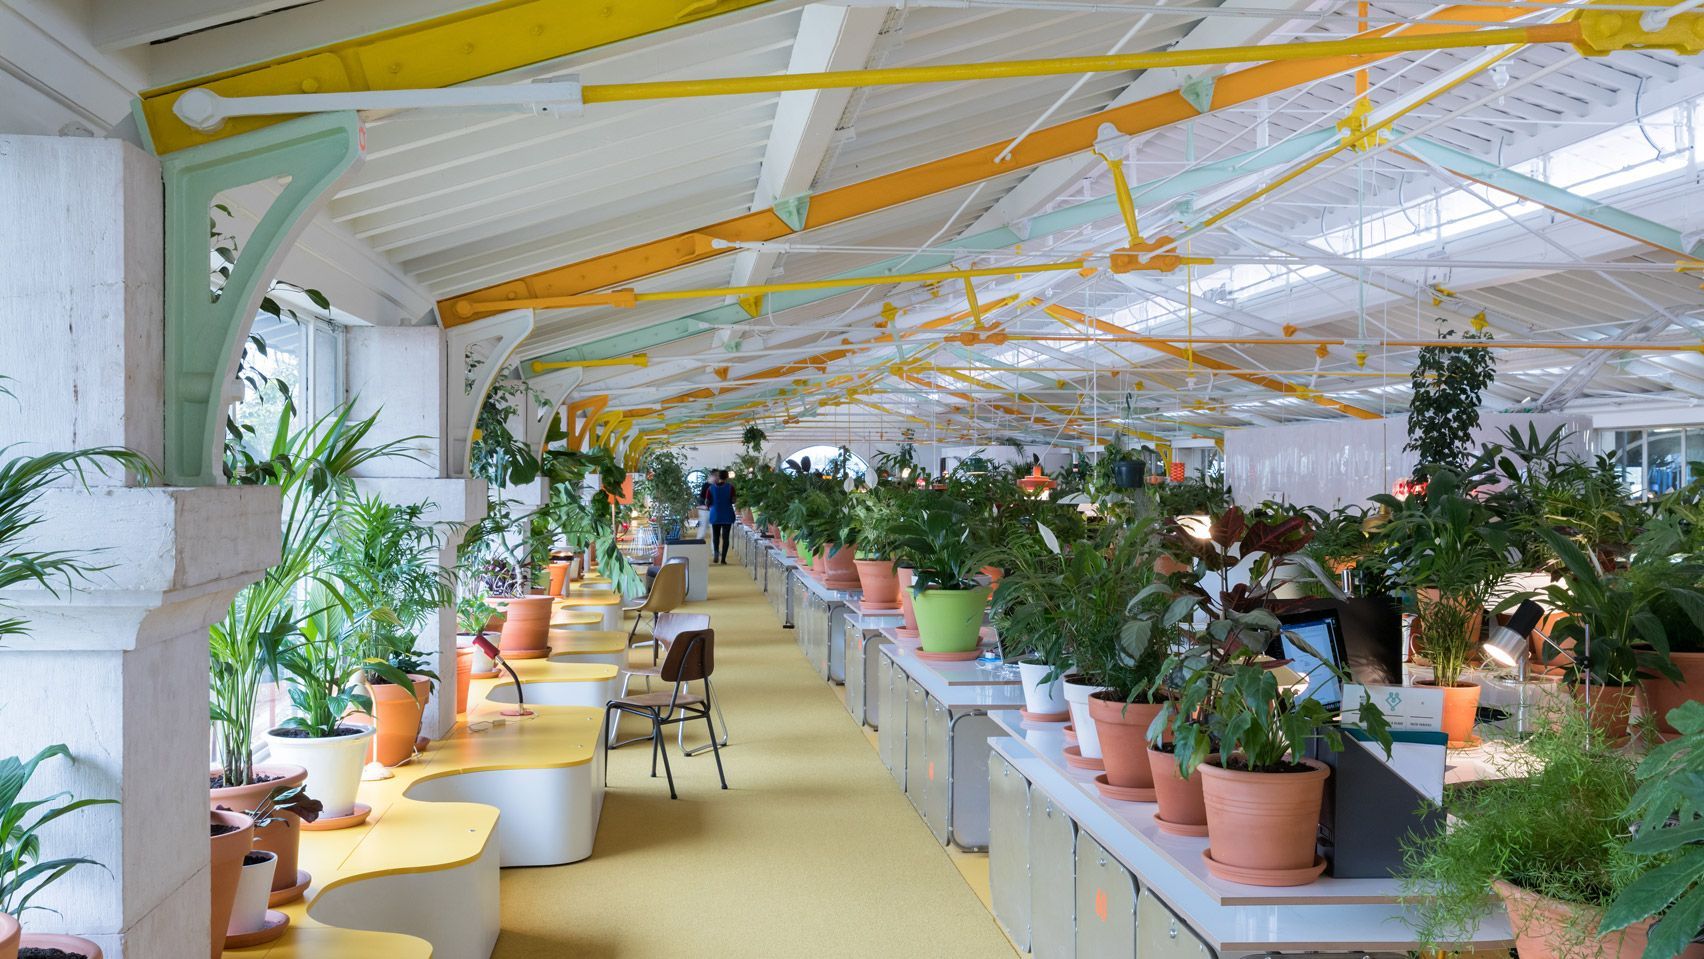 10 красивых идей для озеленения офиса: подборка фото - Дизайн 24